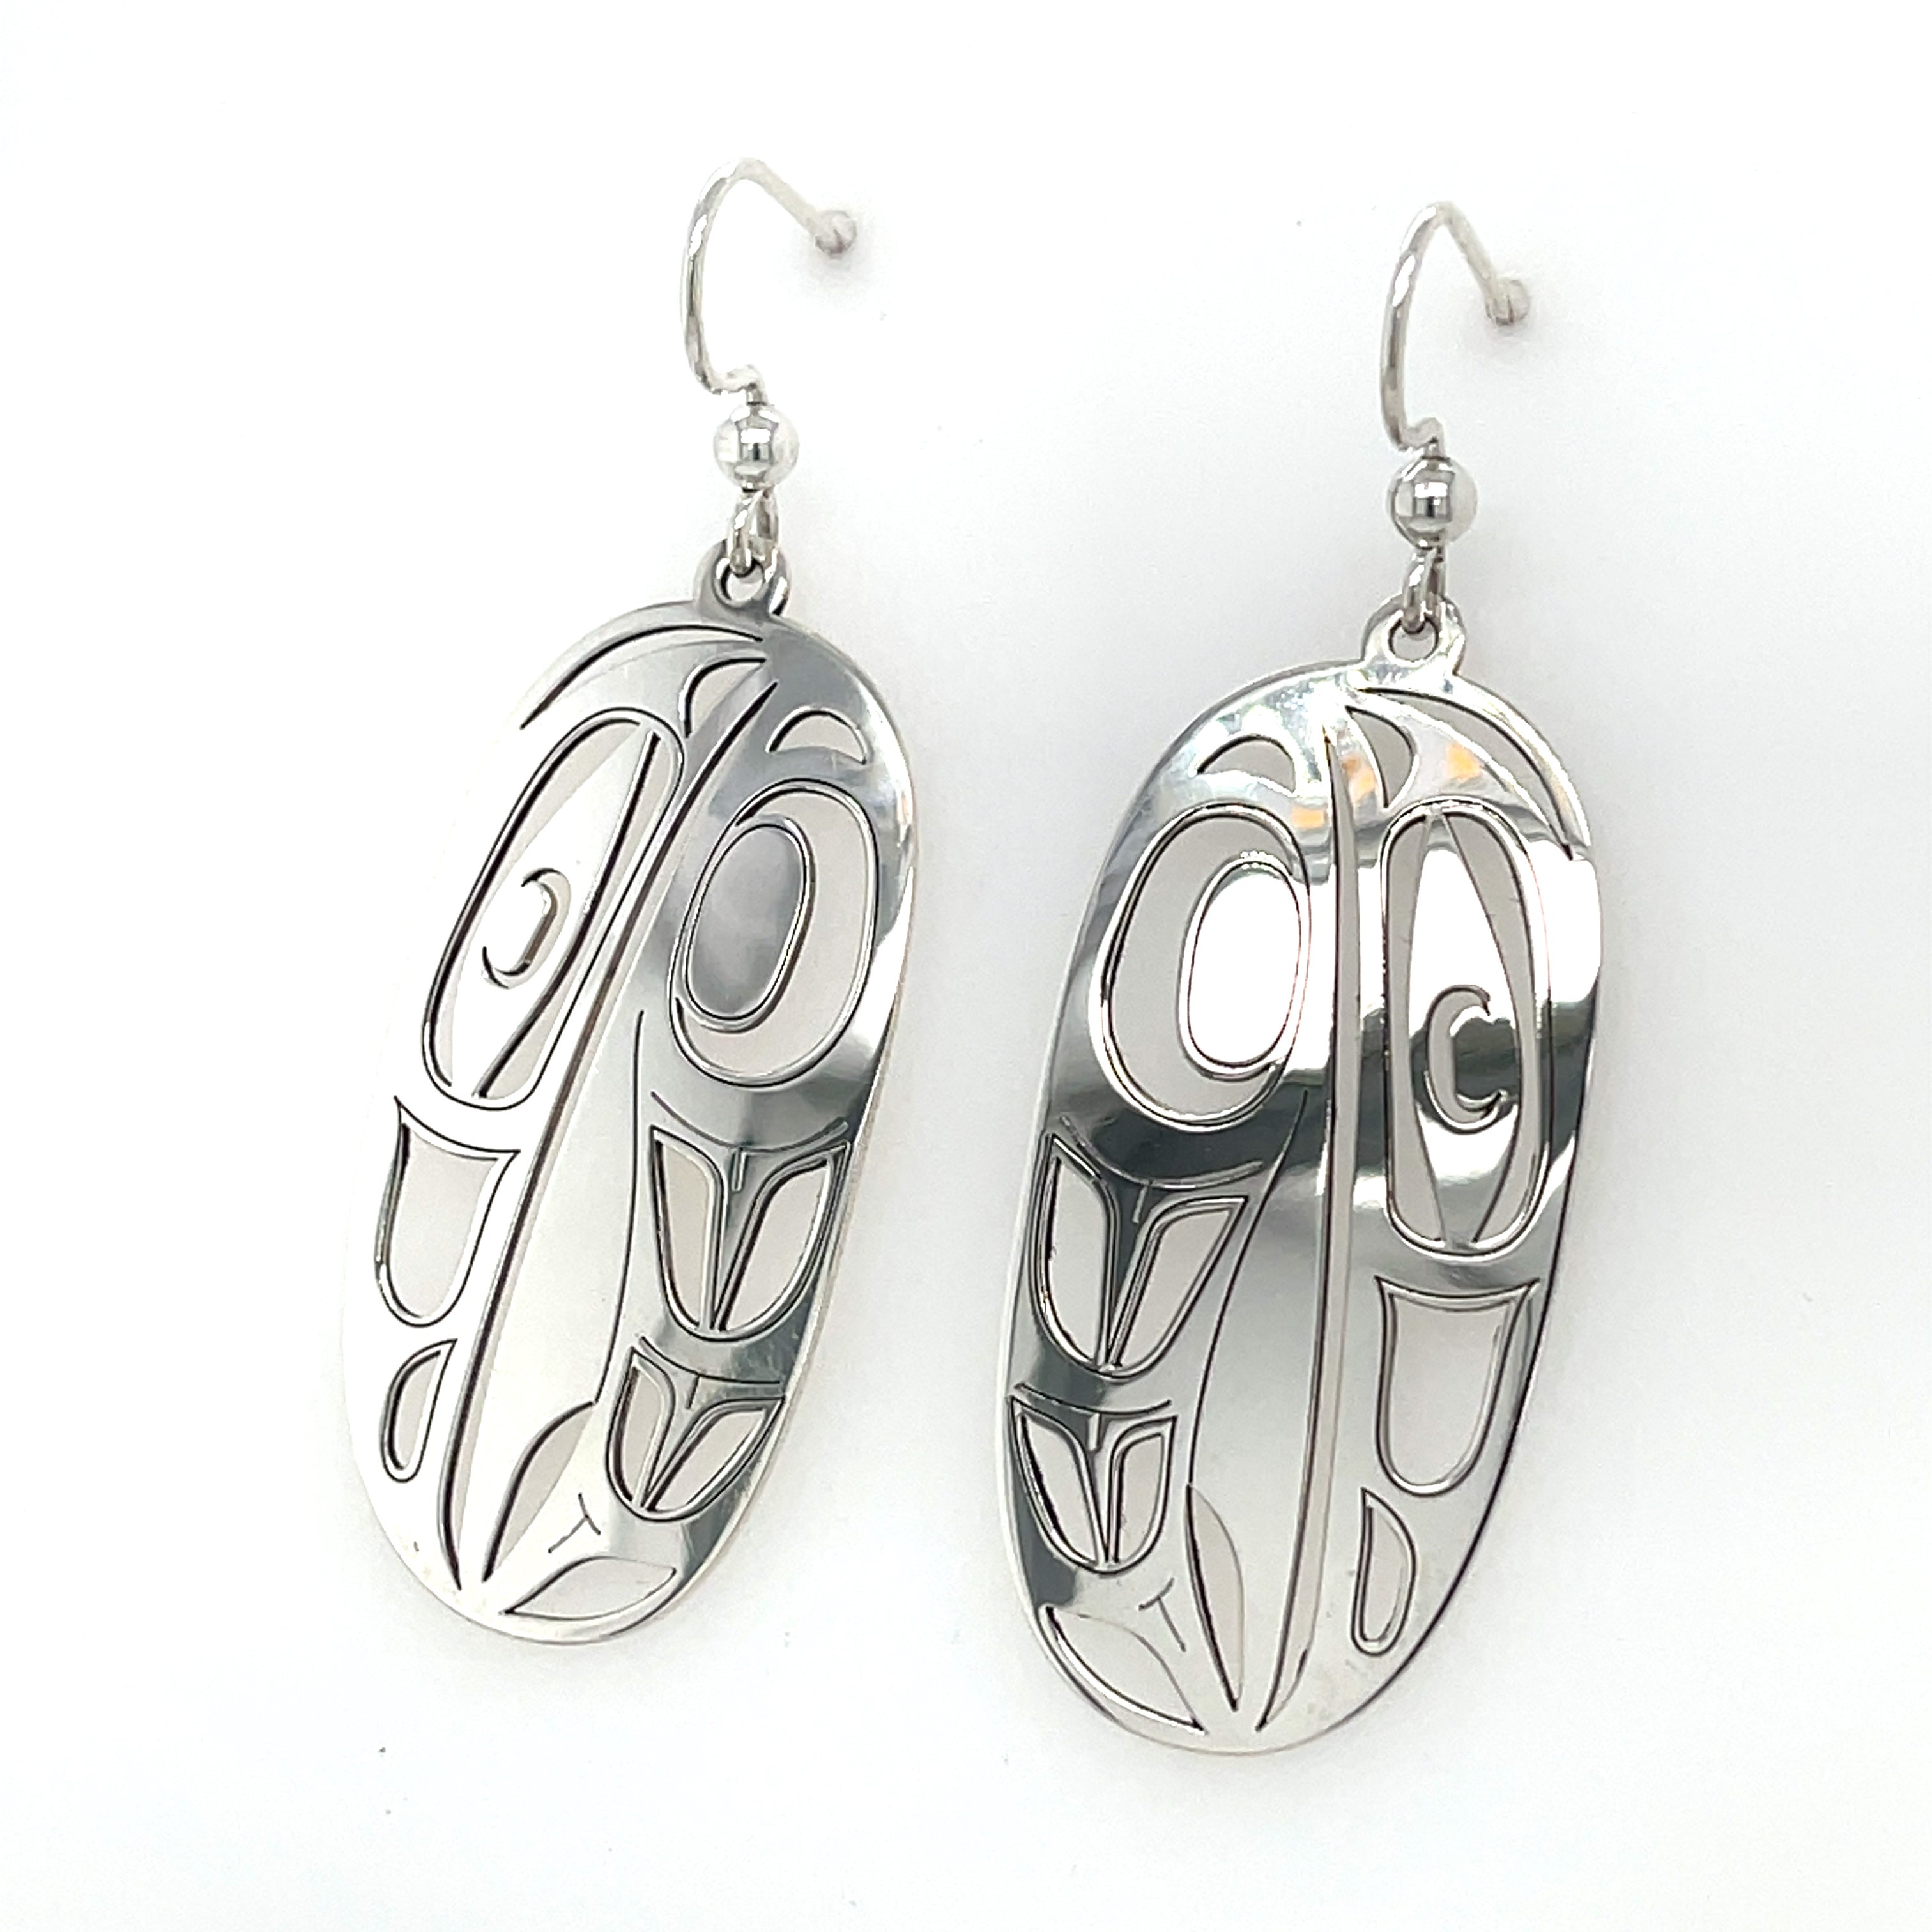 Earrings - Sterling Silver - Oval - Raven